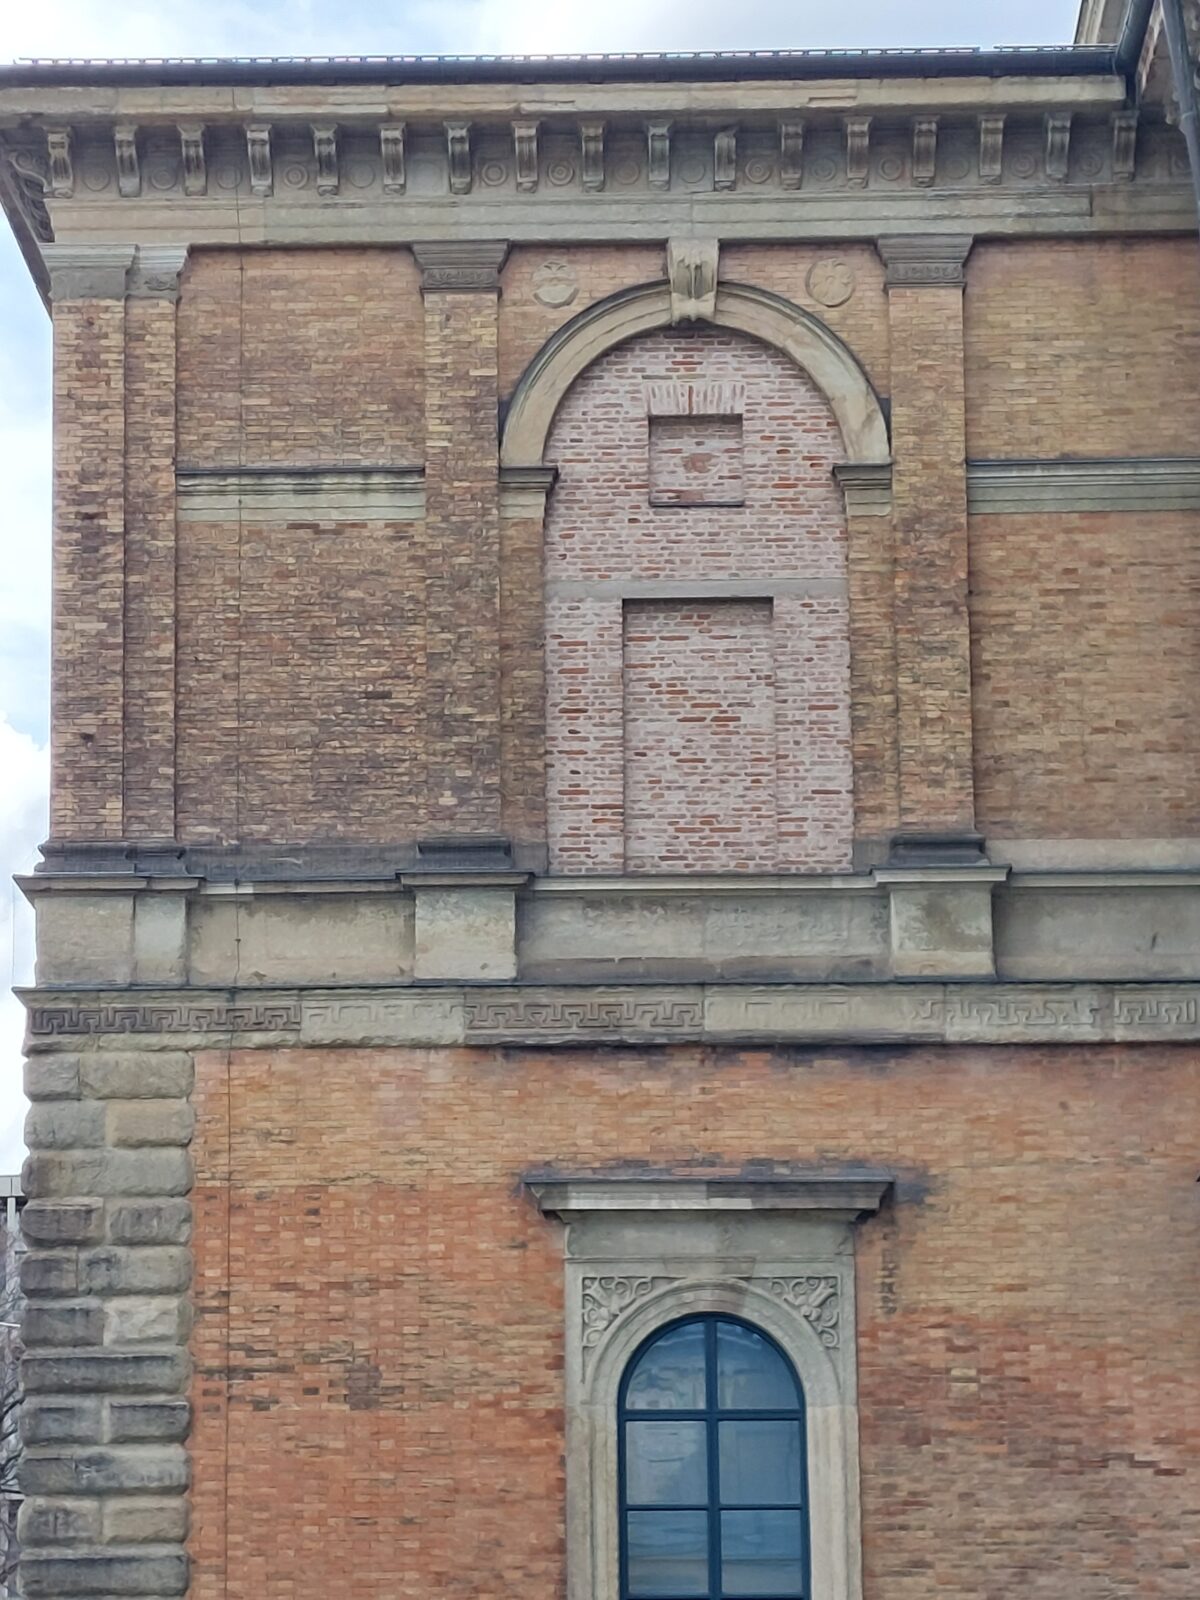 Ein zugemauertes Backsteinfenster steht symbolisch für die Blind-Begutachtung von Journal-Artikeln